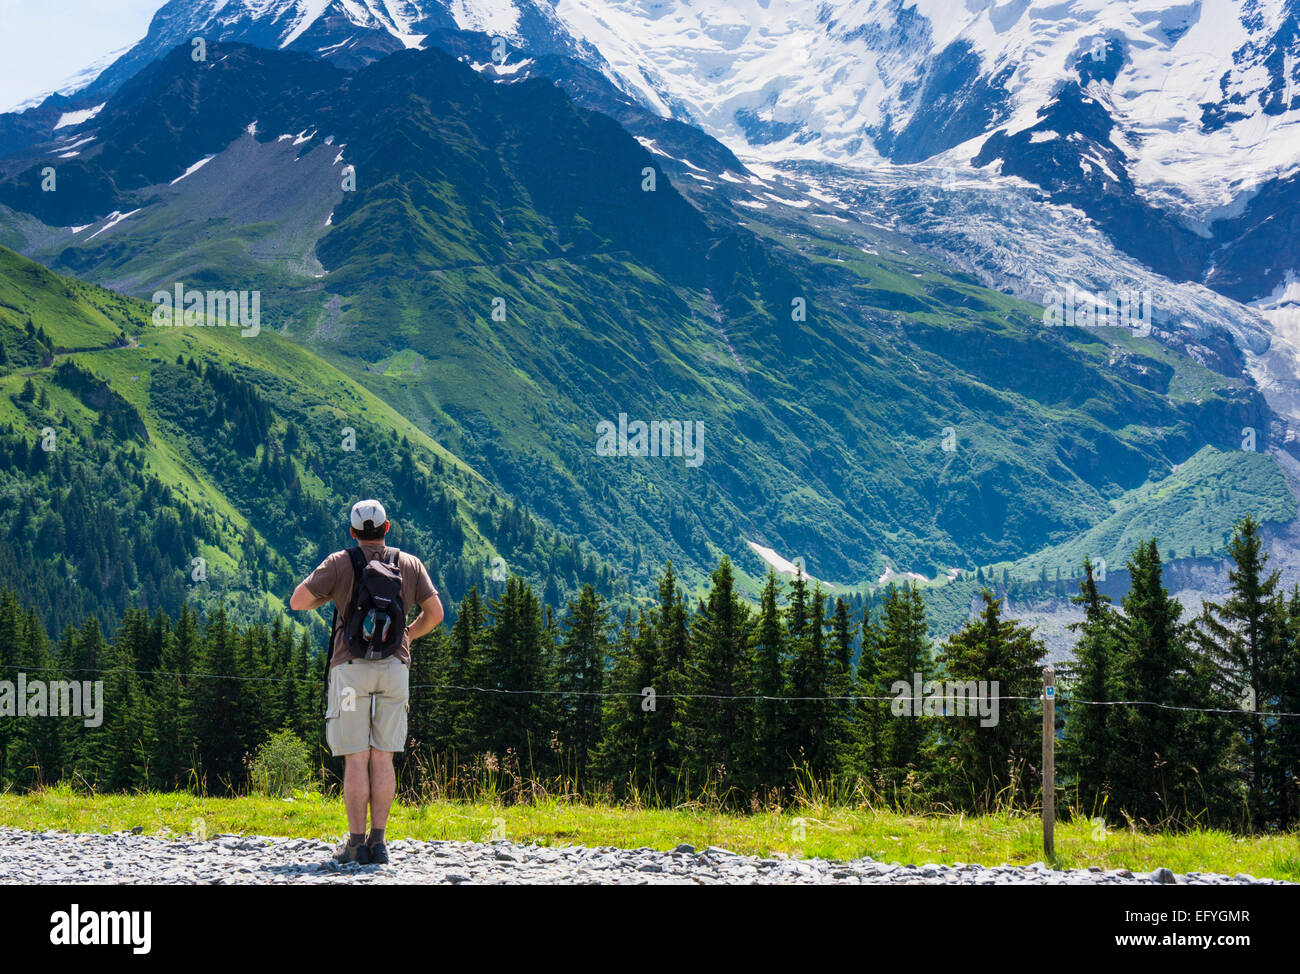 Walker caminando y mirando hacia las laderas del Mont Blanc y el glaciar de Bionnassay, Chamonix, Alpes franceses, Francia, Europa en verano Foto de stock